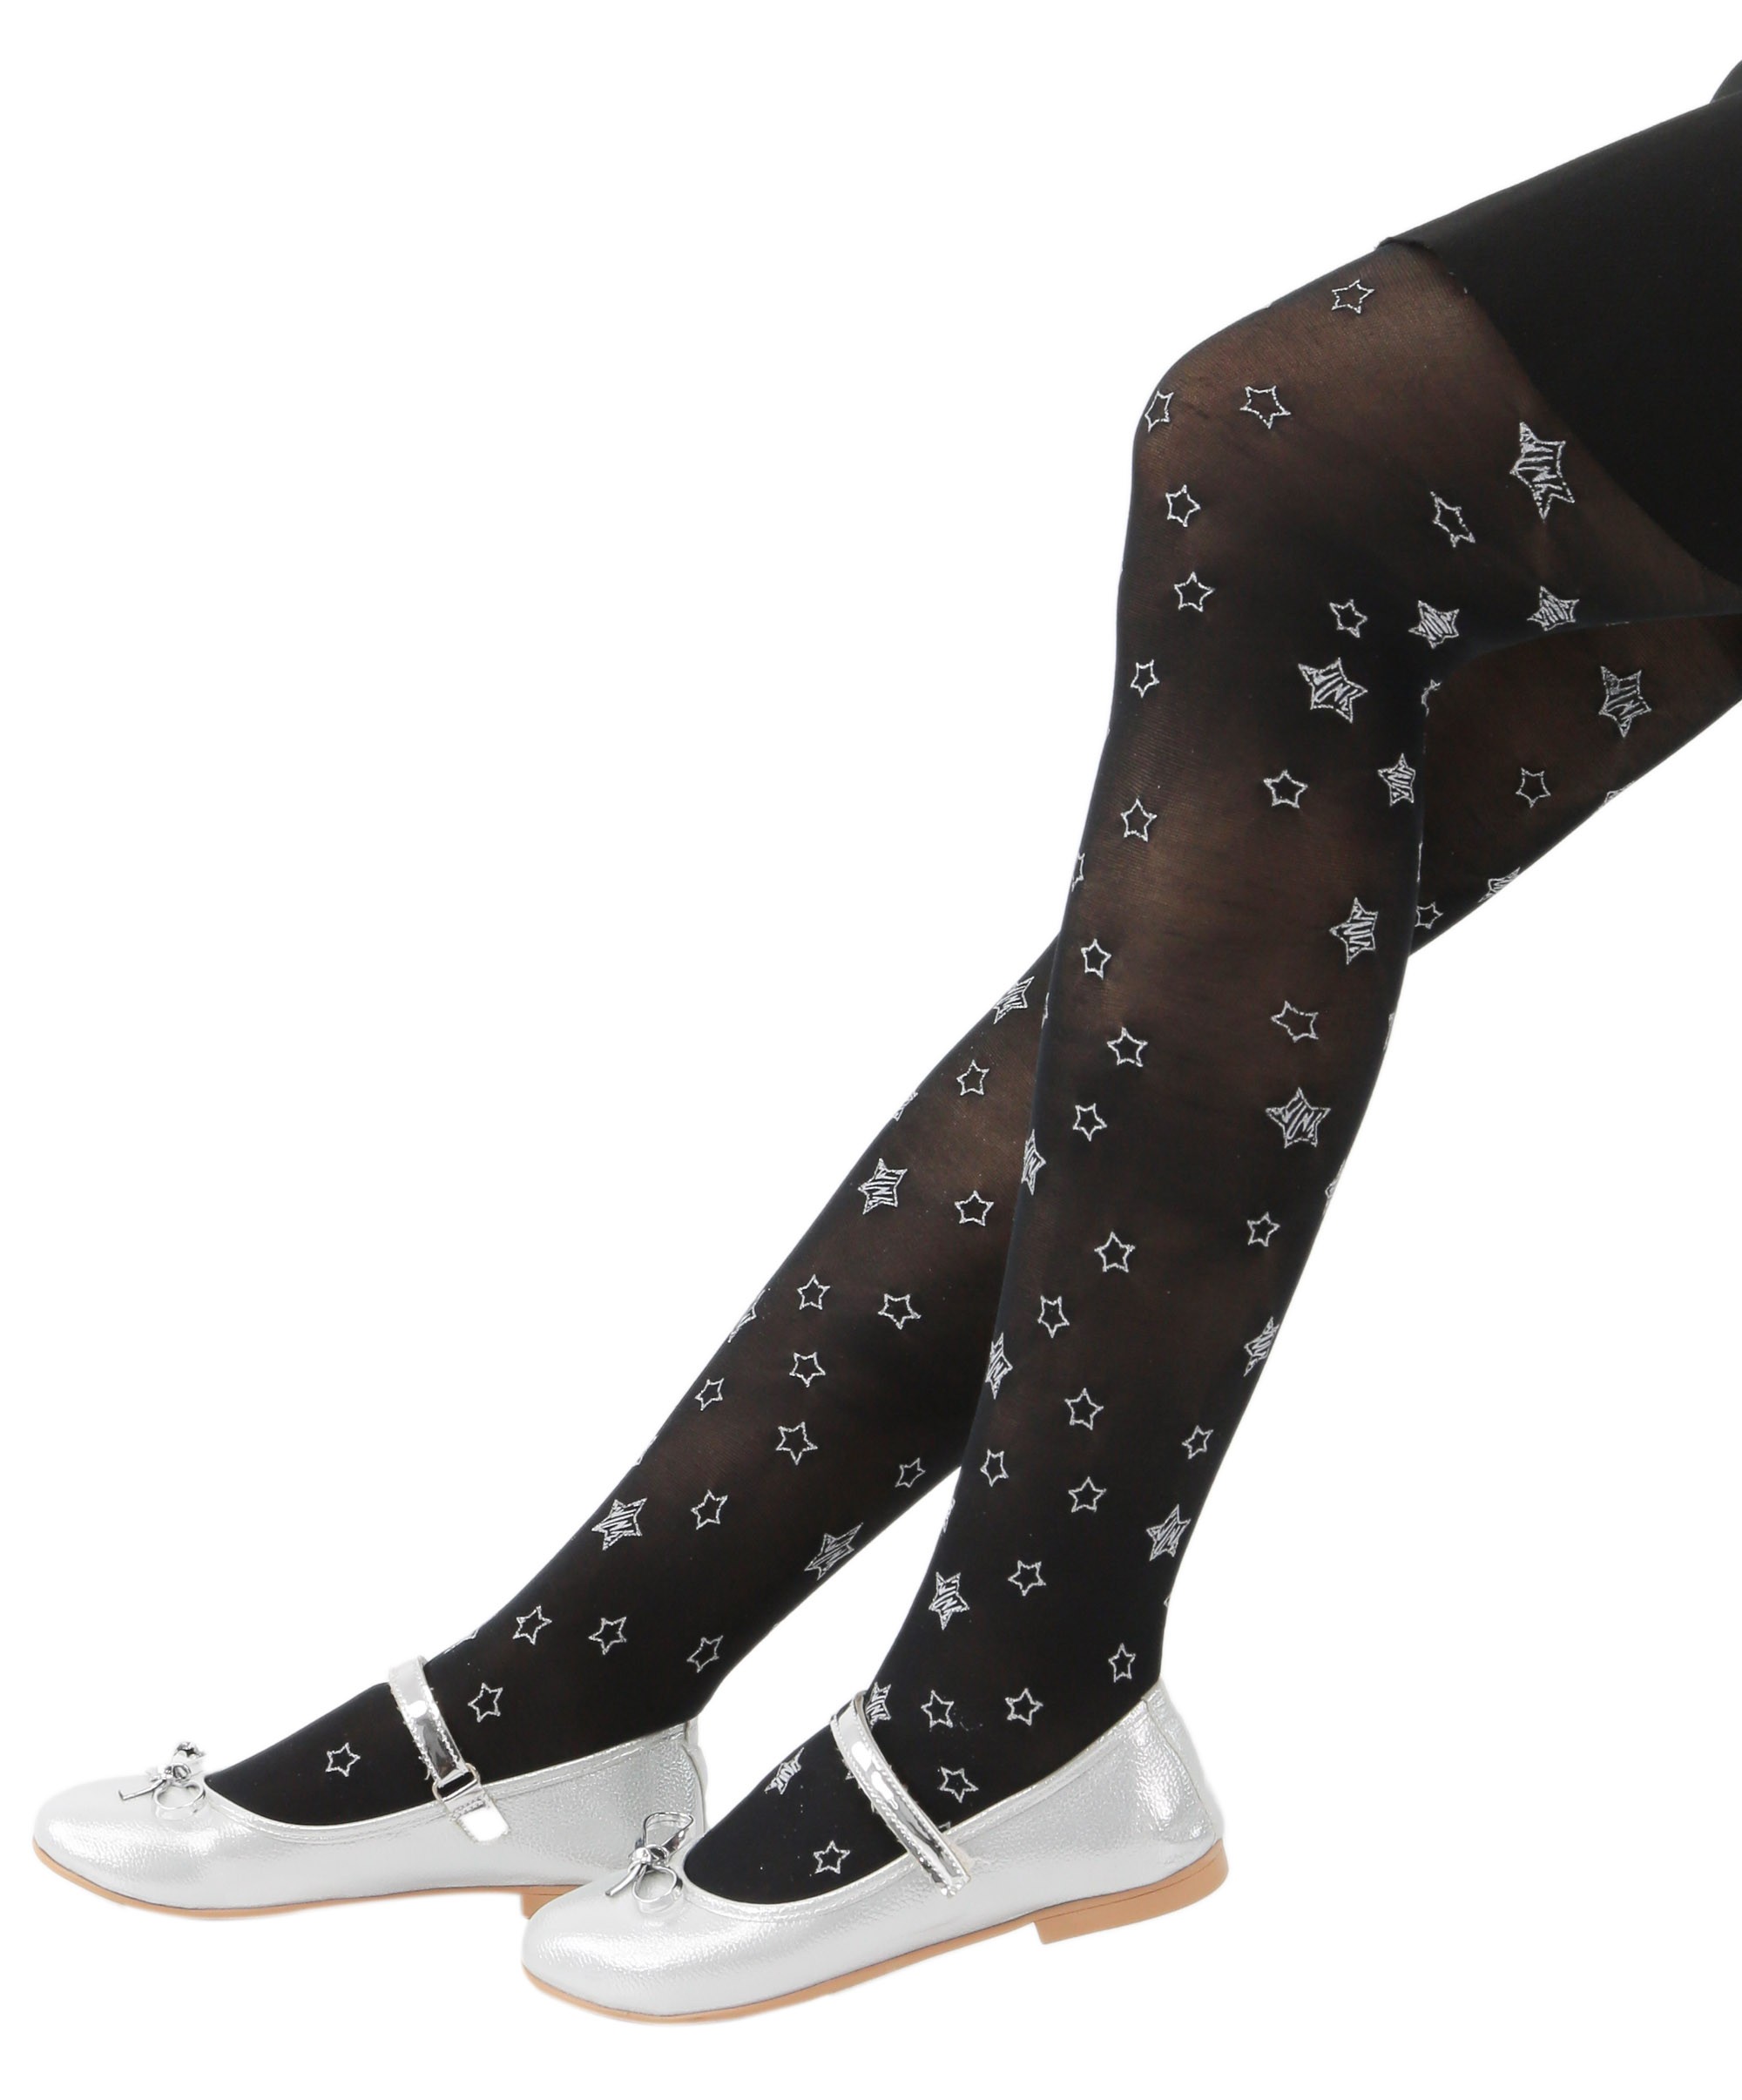 1-12 Yaş Kız Çocuk 50 DEN Yıldız Desenli Külotlu Çorap  - Siyah